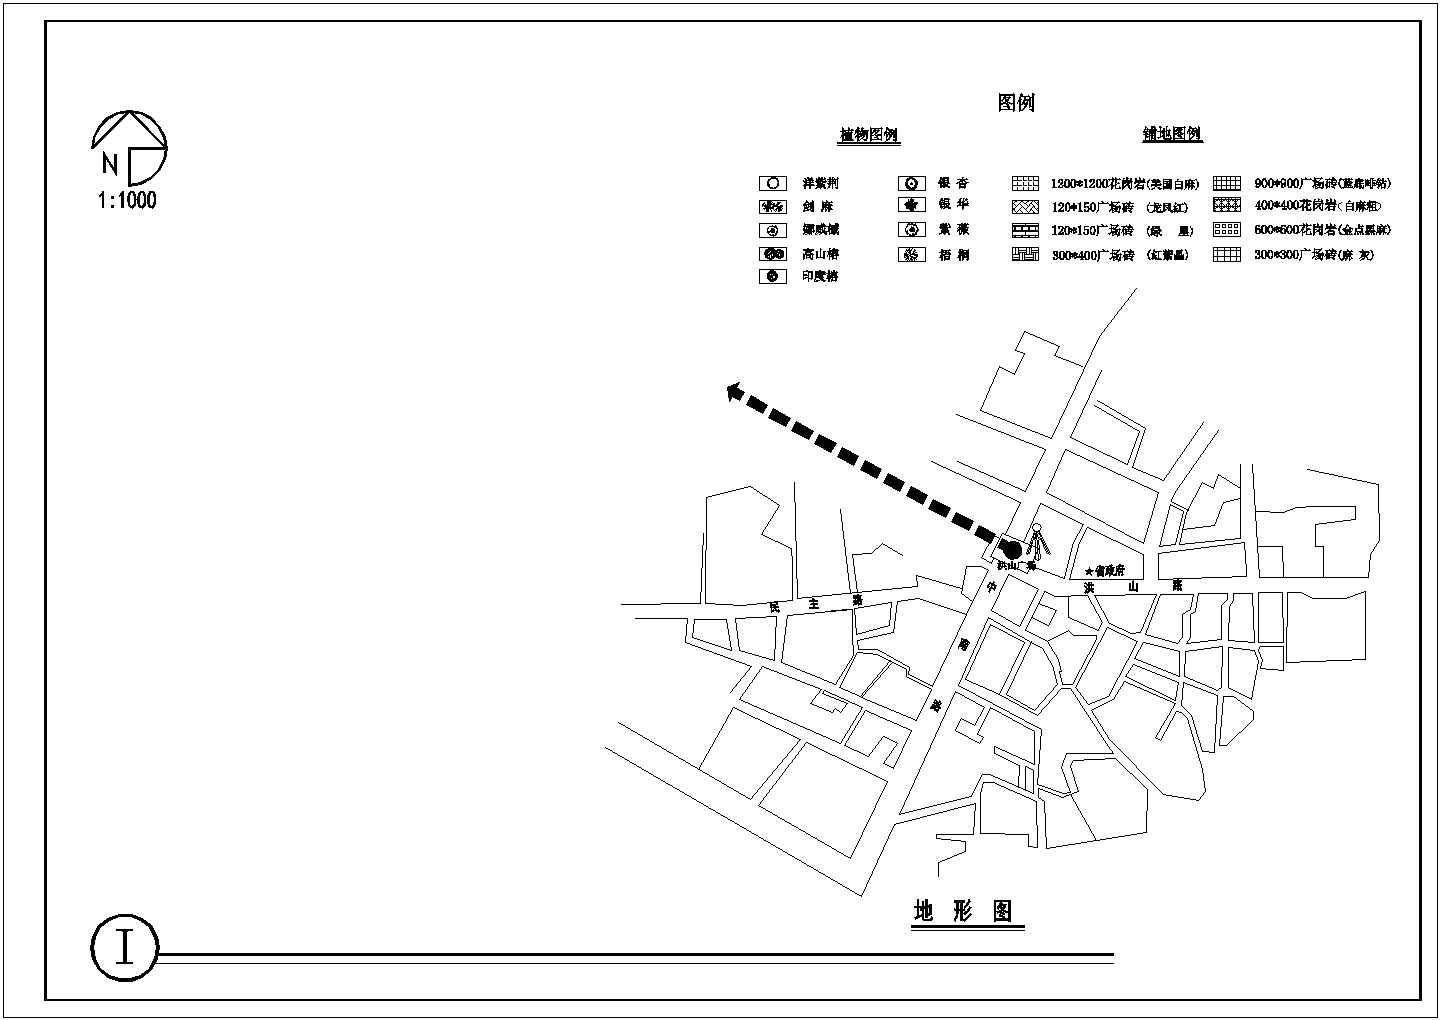 【上海某知名设计研究院】浦东新区某广场规划设计图